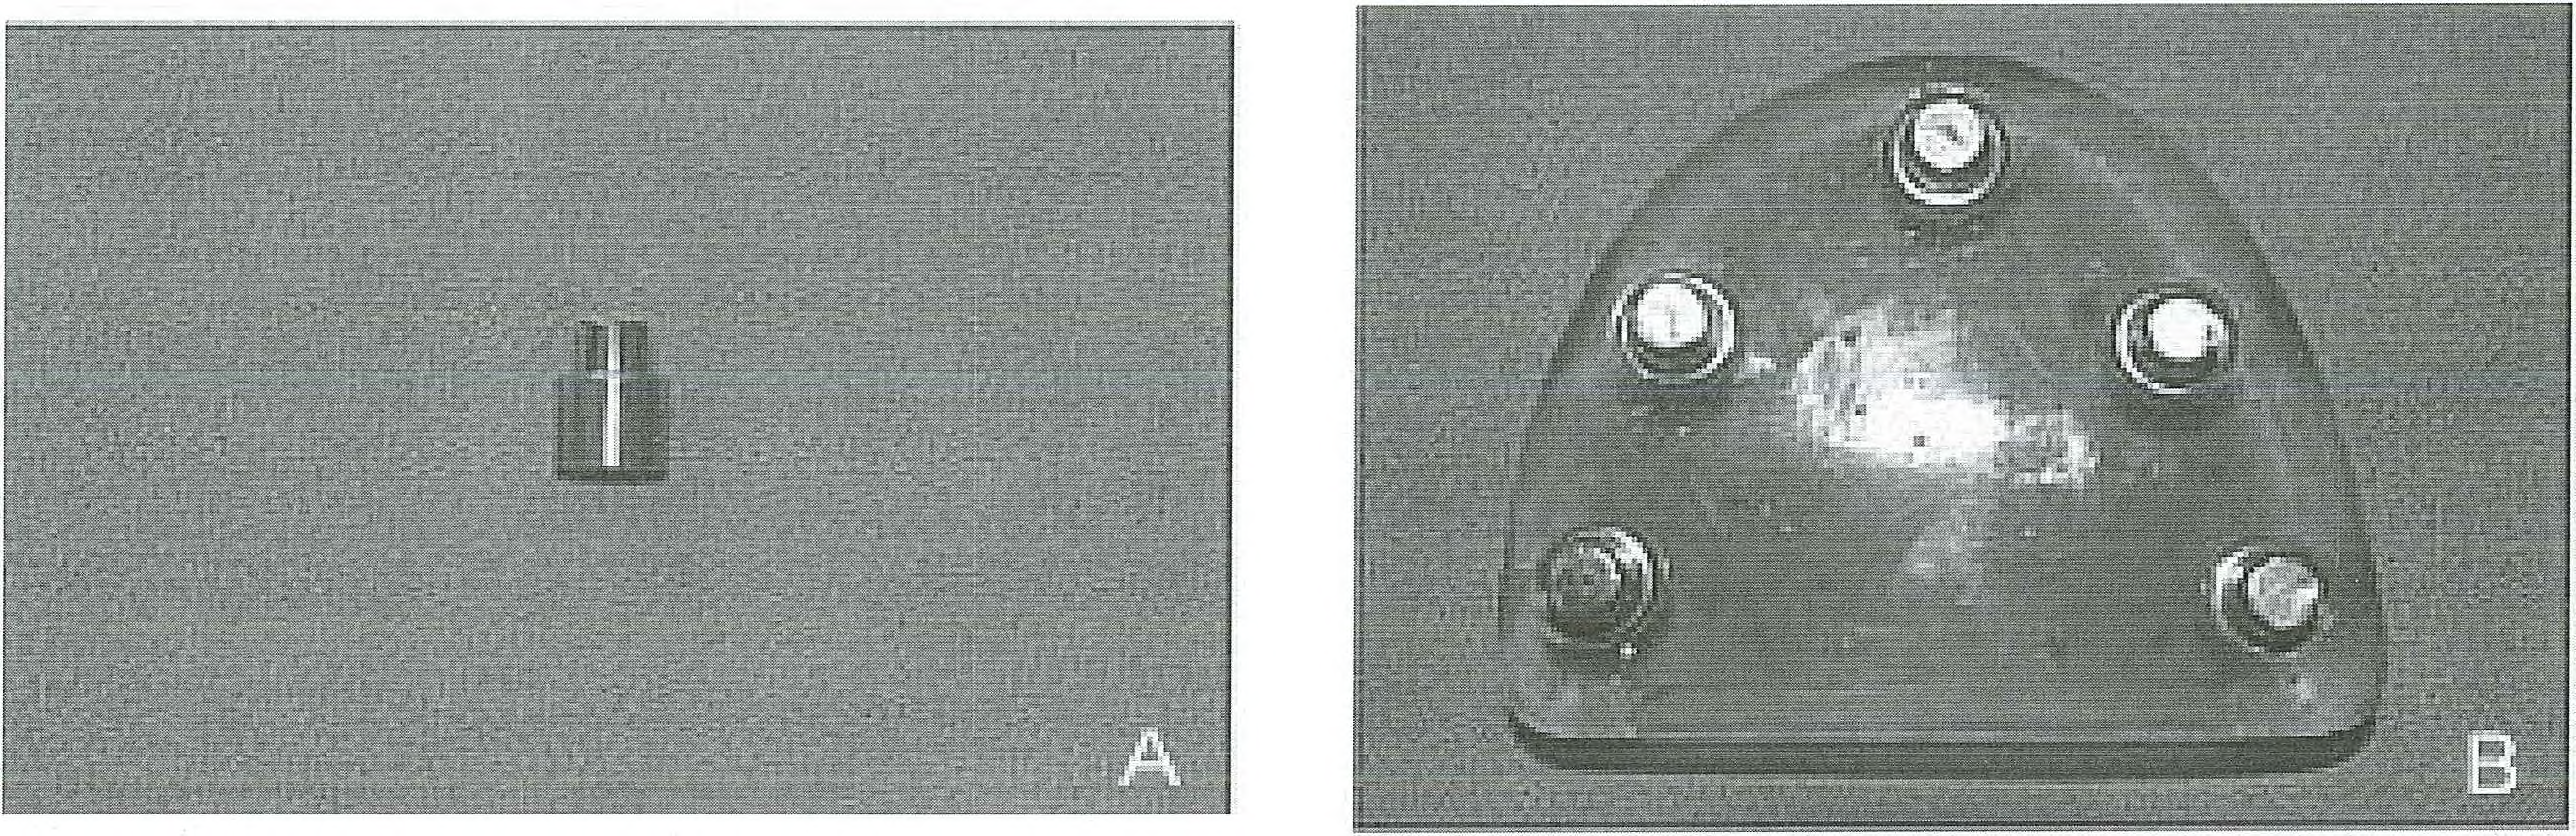 Ural, Burgaz, ve Saraç Resim 2. Kenar uyumu değerlendirmesi. A. Metal örnek üzerinde rehber noktaların hazırlanması, B. Ölçüm için alınan SEM görüntüsü Resim 3.